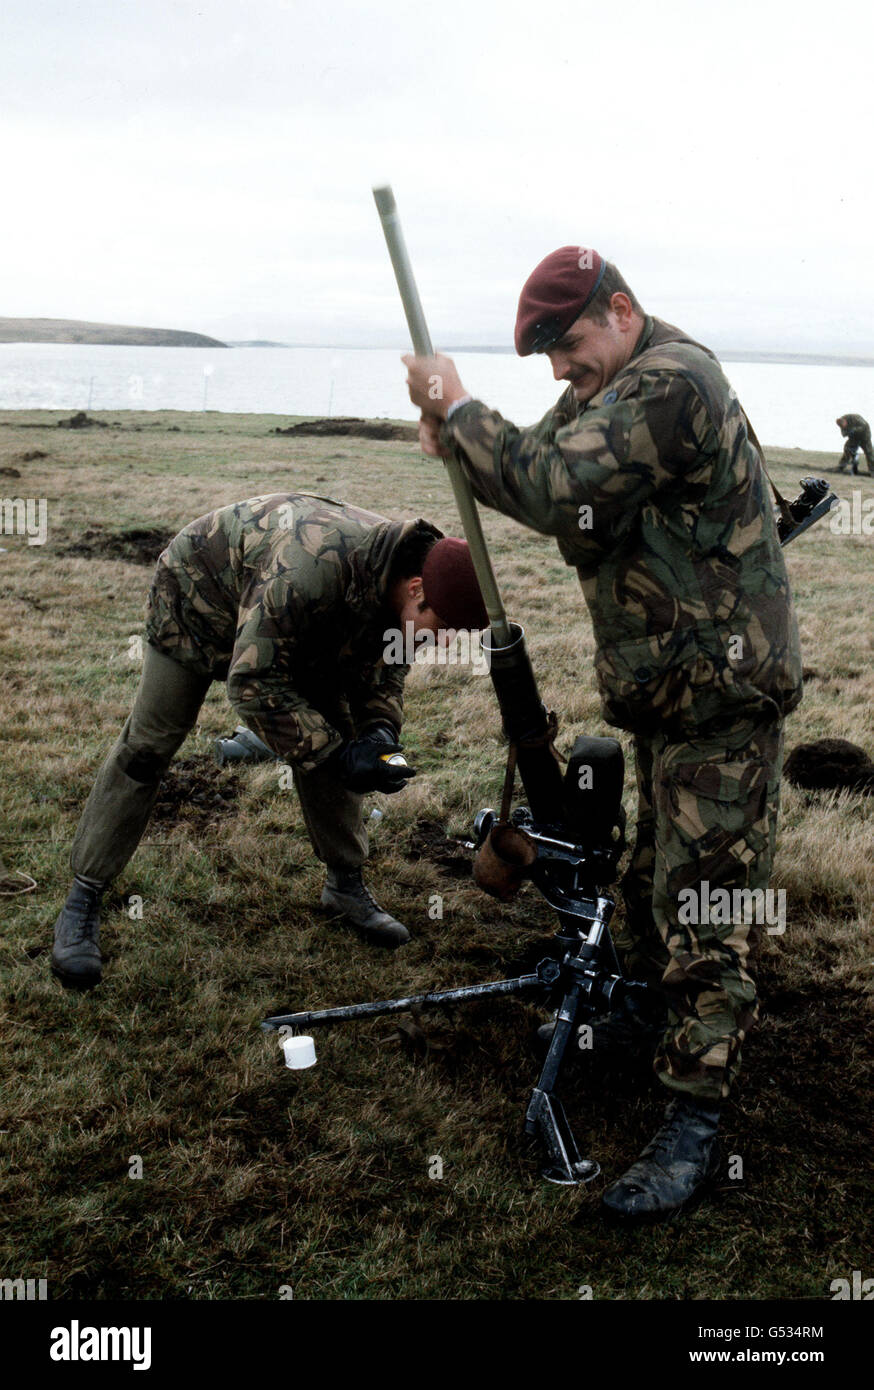 LA GUERRE DES MALOUINES : les parachutistes de la Force opérationnelle des îles Falkland britanniques nettoient un mortier sur le Falkland oriental avant la poussée finale sur Port Stanley, la capitale, et la capitulation des forces armées argentines le 15 juin 1982. *25/03/02 parachutistes de la Force opérationnelle des îles Falkland britanniques nettoyant un mortier sur le Falkland oriental avant la dernière poussée sur Port Stanley, la capitale, et la capitulation des forces armées argentines le 15 juin 1982. Le 20e anniversaire de l'invasion des Malouines par les forces argentines aura lieu le 2 avril 2002. Banque D'Images